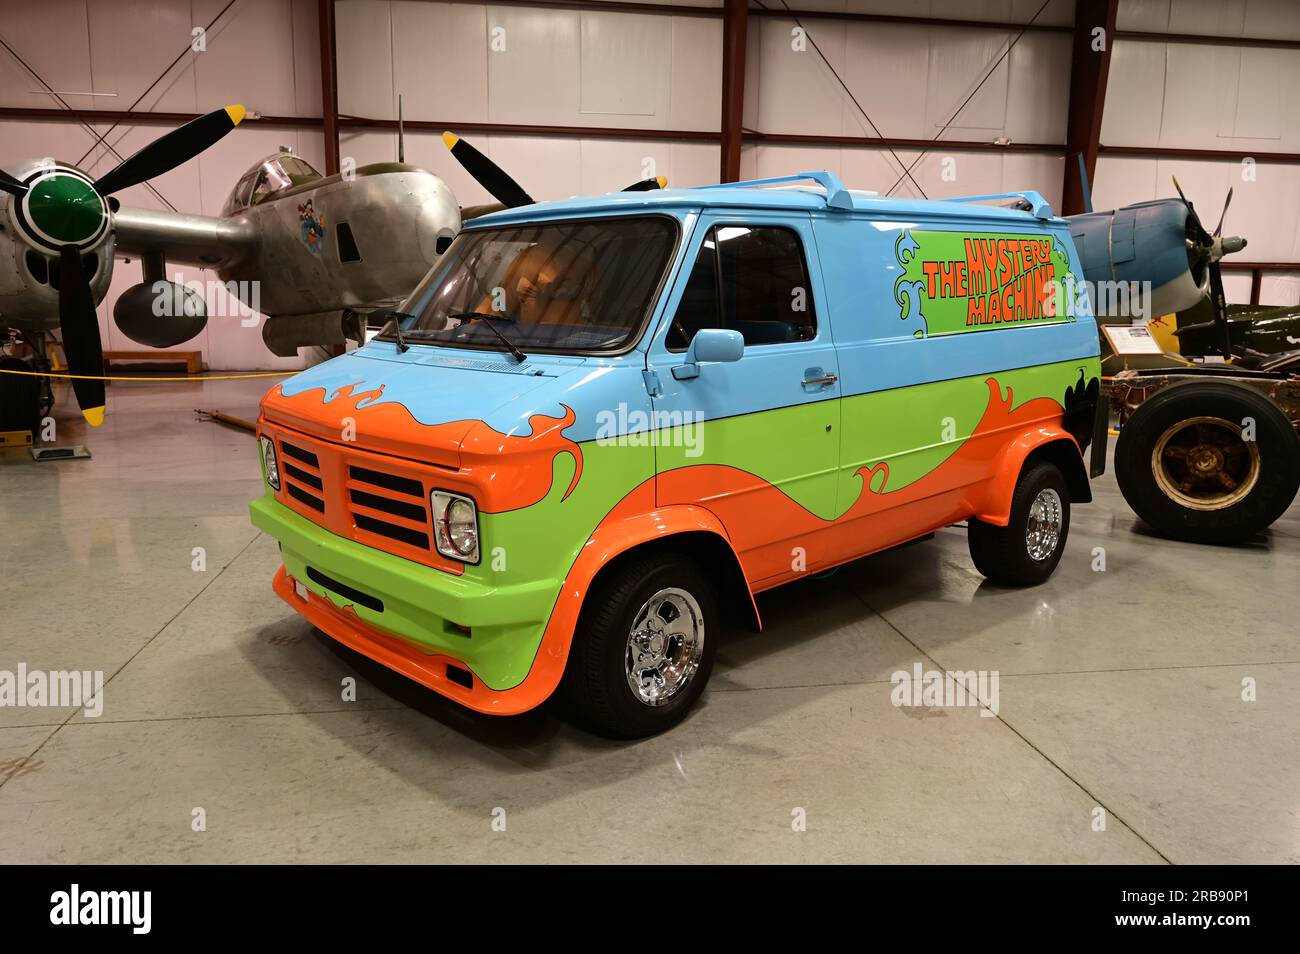 Scooby Doo van. Stock Photo